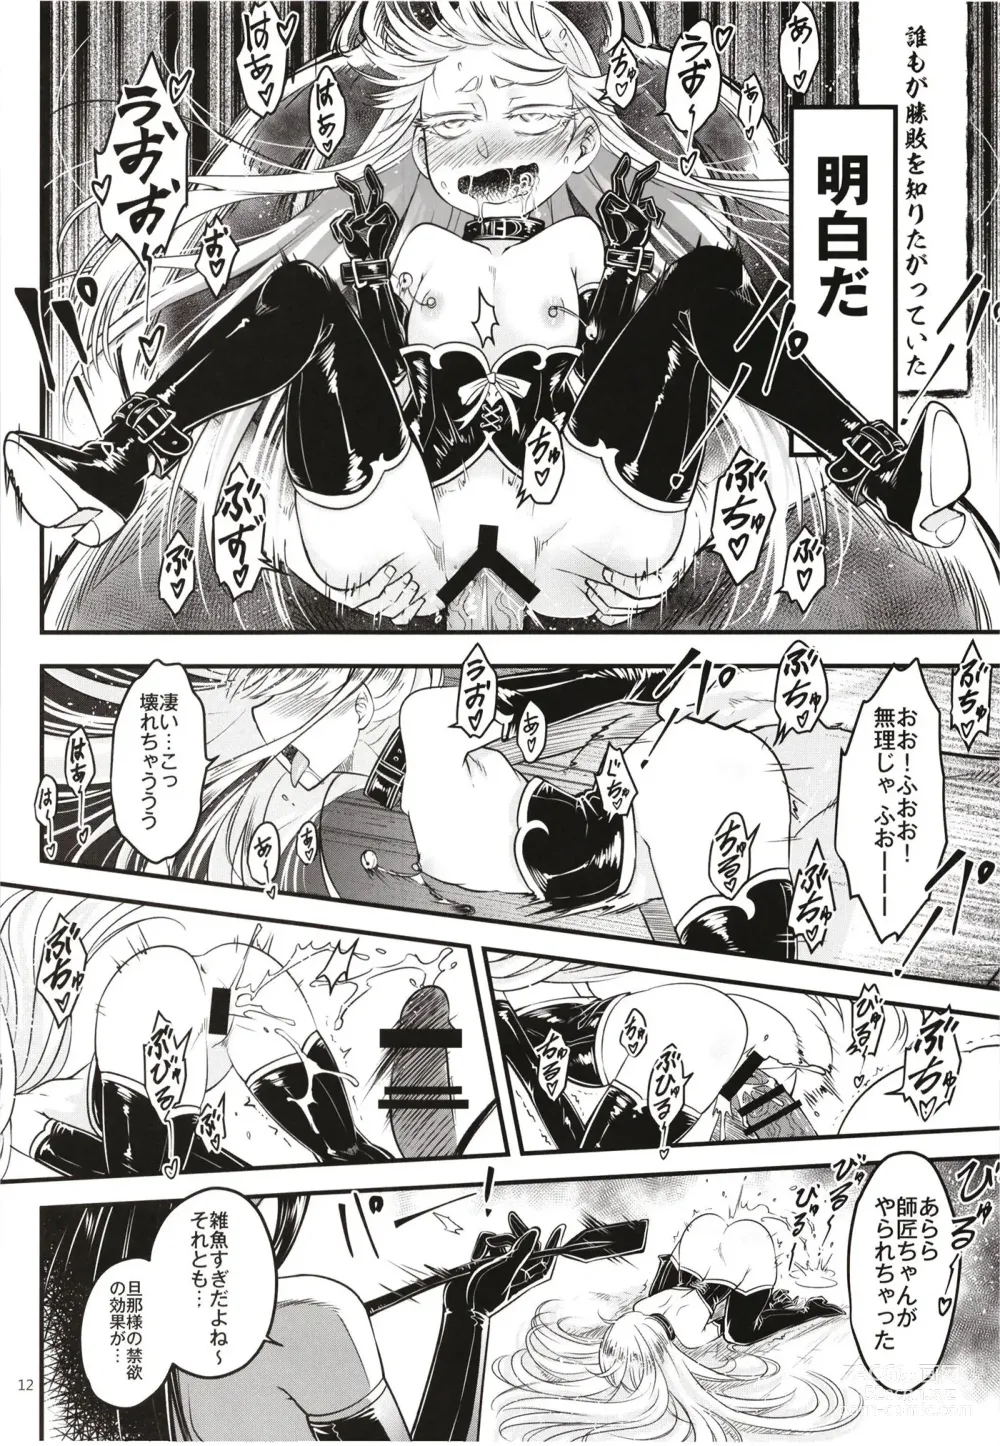 Page 14 of doujinshi Hyakkasou 12 <<Jitsuroku Makyou Hyakkasou Kikou>>